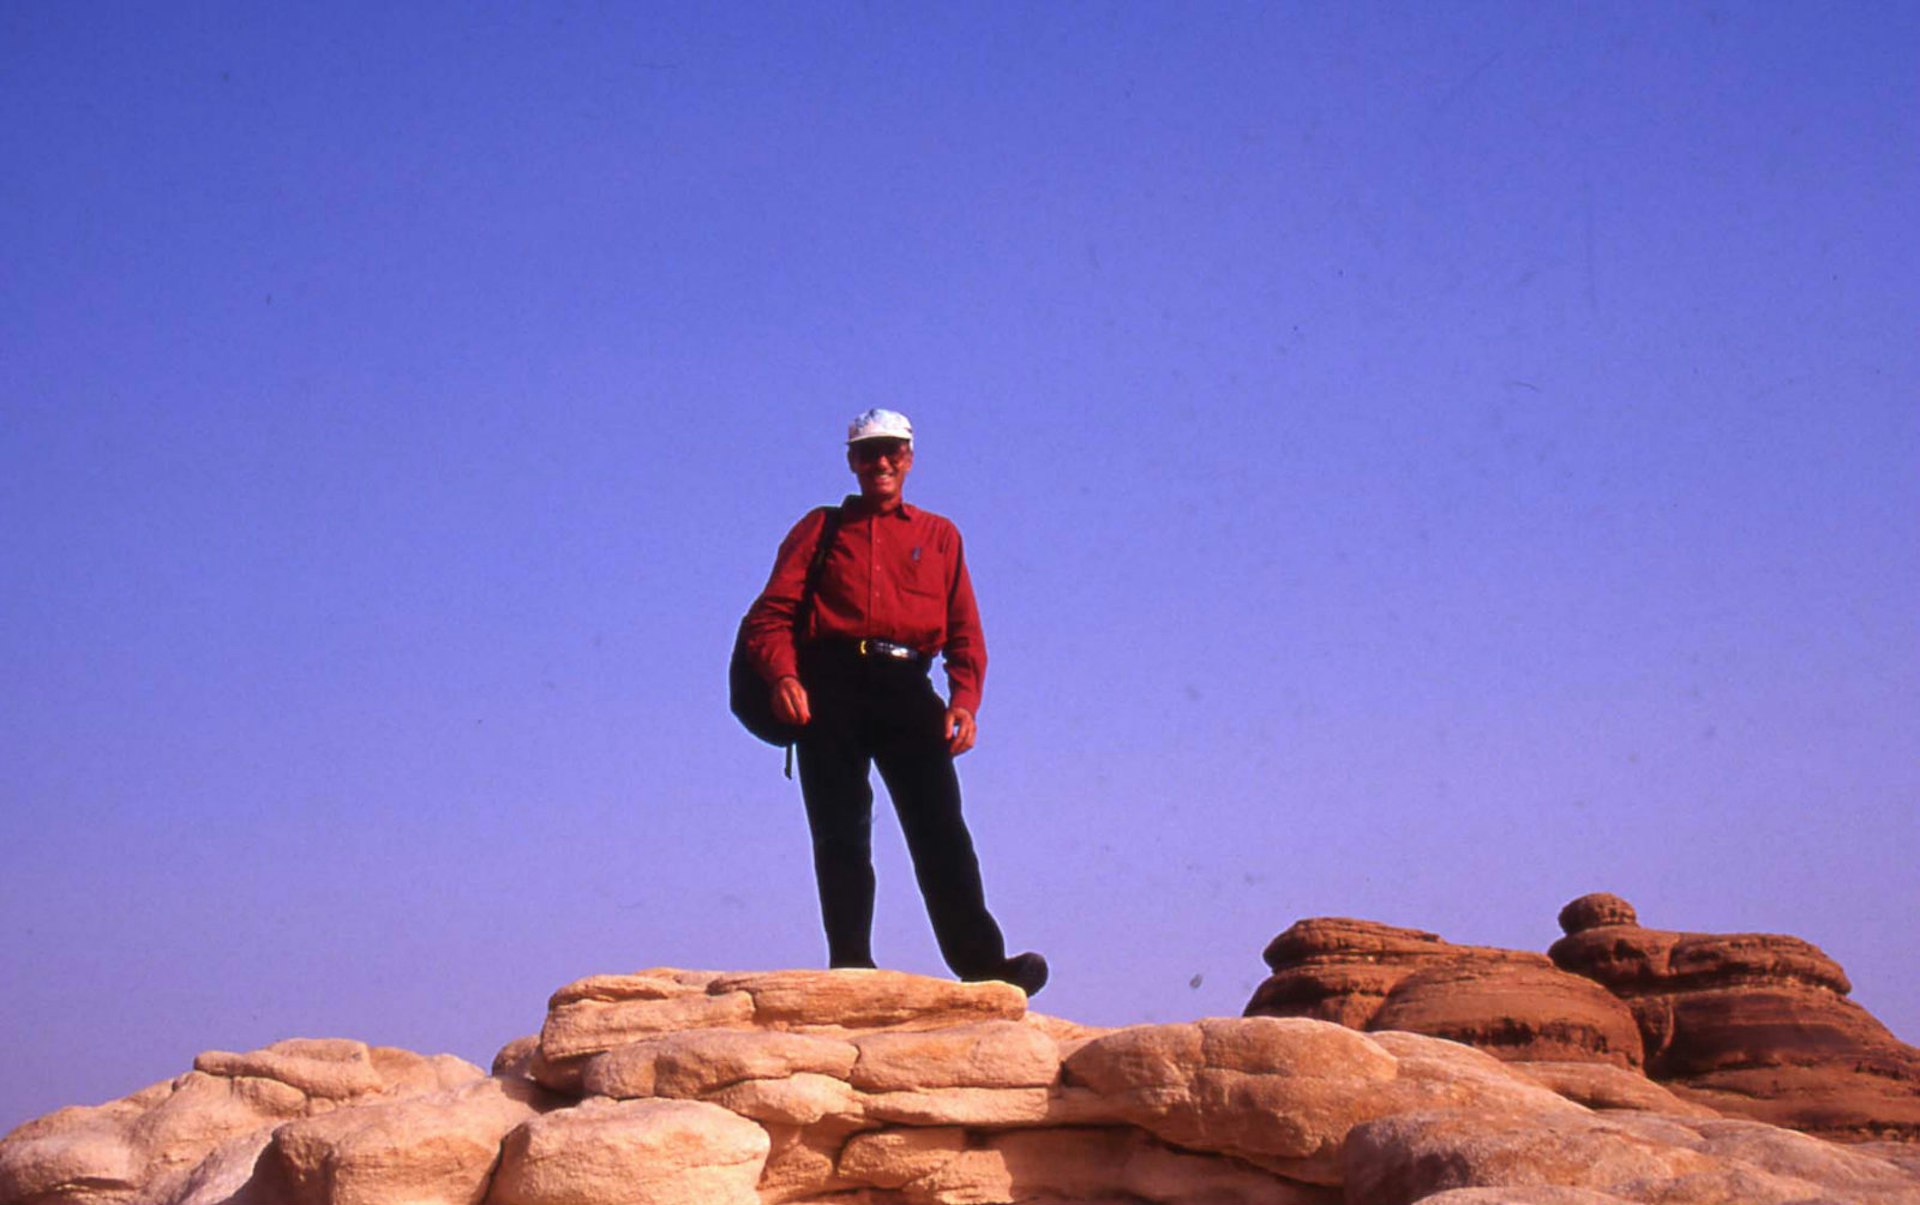 Tony Wheeler's top 10 cities - Not quite Mecca – Tony poses atop the rocky terrain of Madain Saleh © Tony Wheeler / Lonely Planet